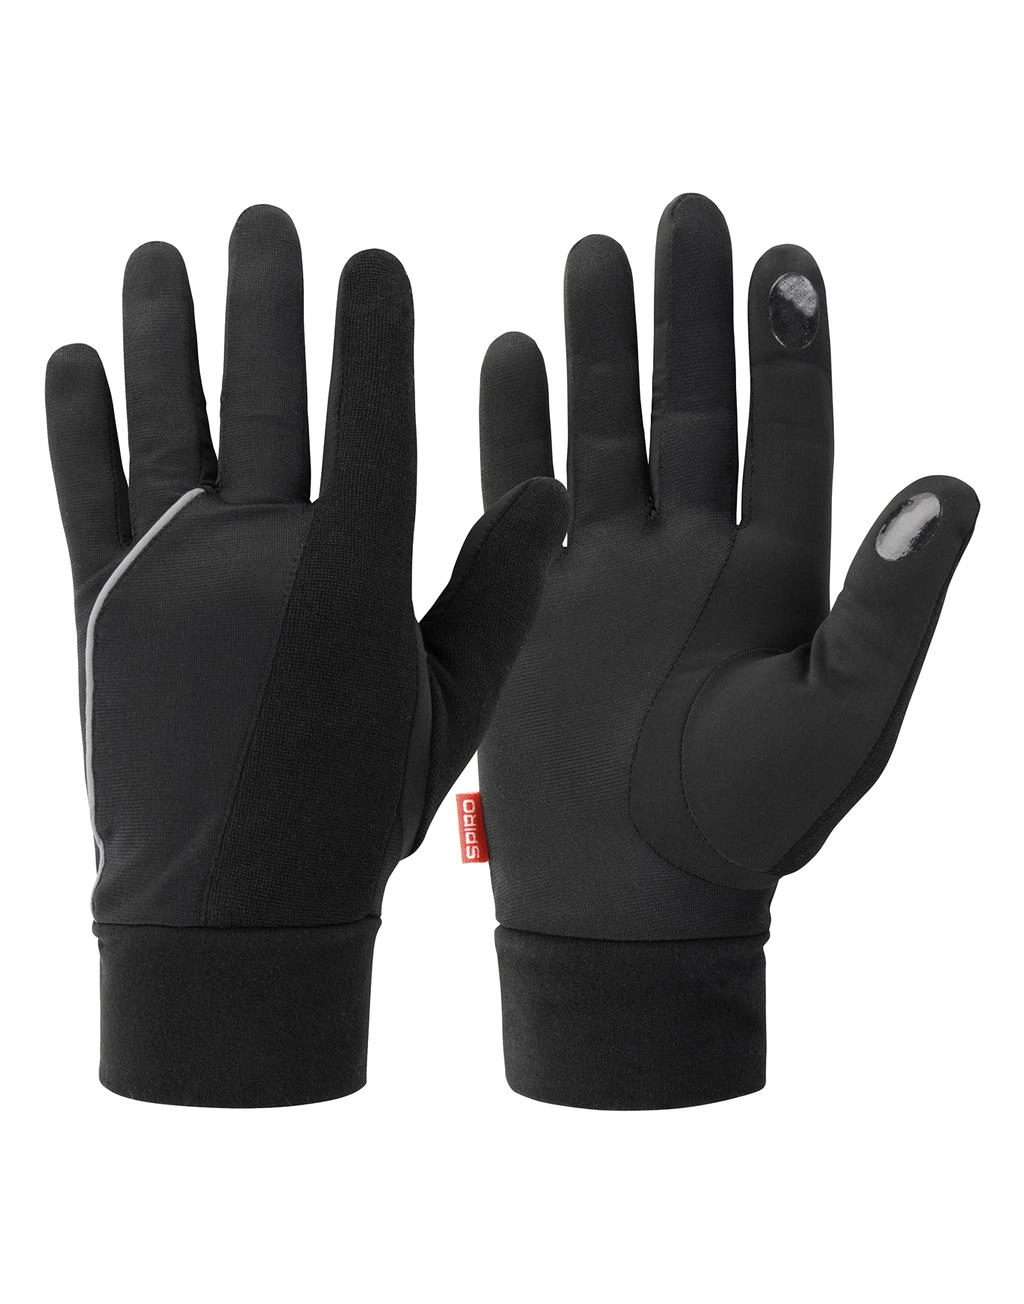 Elite Running Gloves zum Besticken und Bedrucken mit Ihren Logo, Schriftzug oder Motiv.